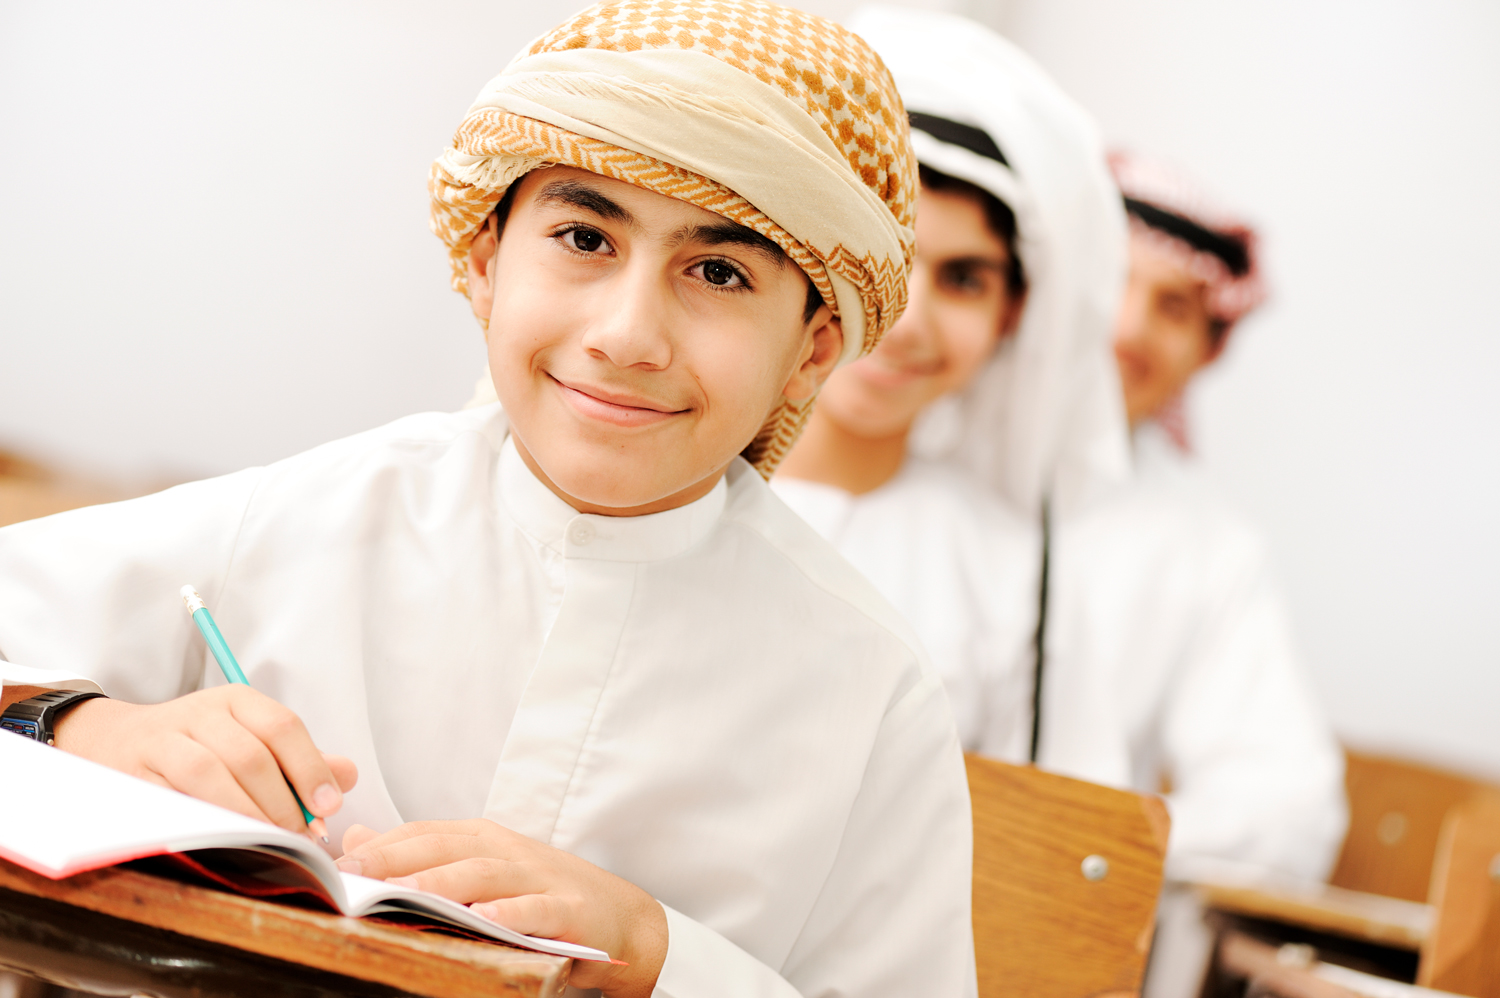 ОАЭ. Обучение по-арабски